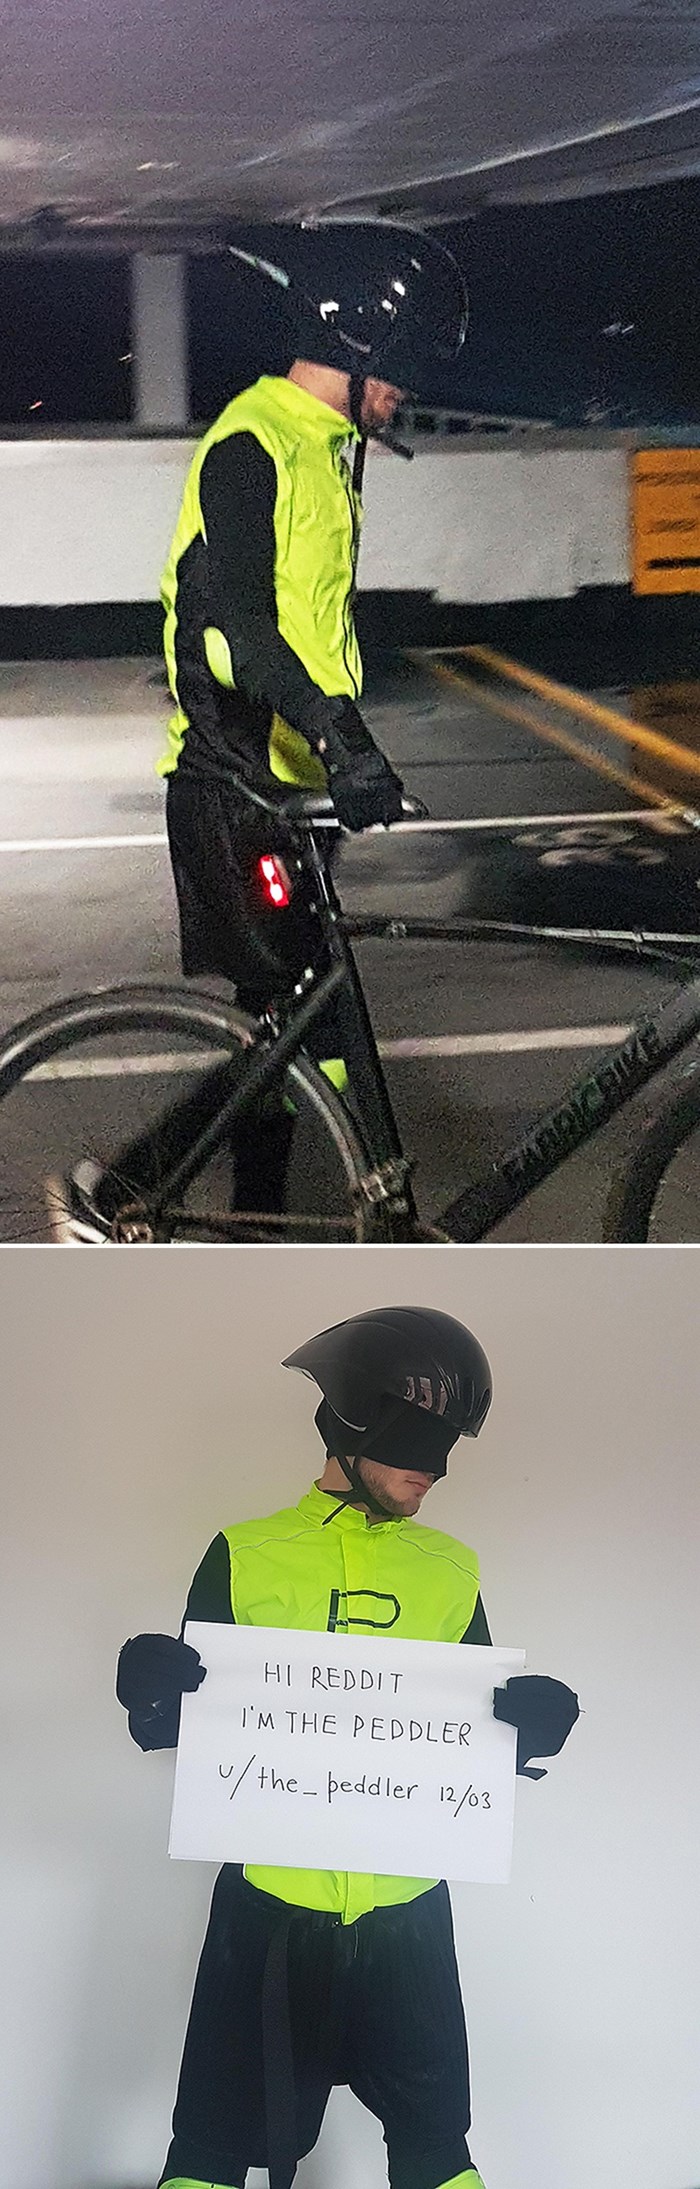 Policiji je prijavio krađu, no umjesto njih, pomogao mu je maskirani superheroj i vratio mu bicikl